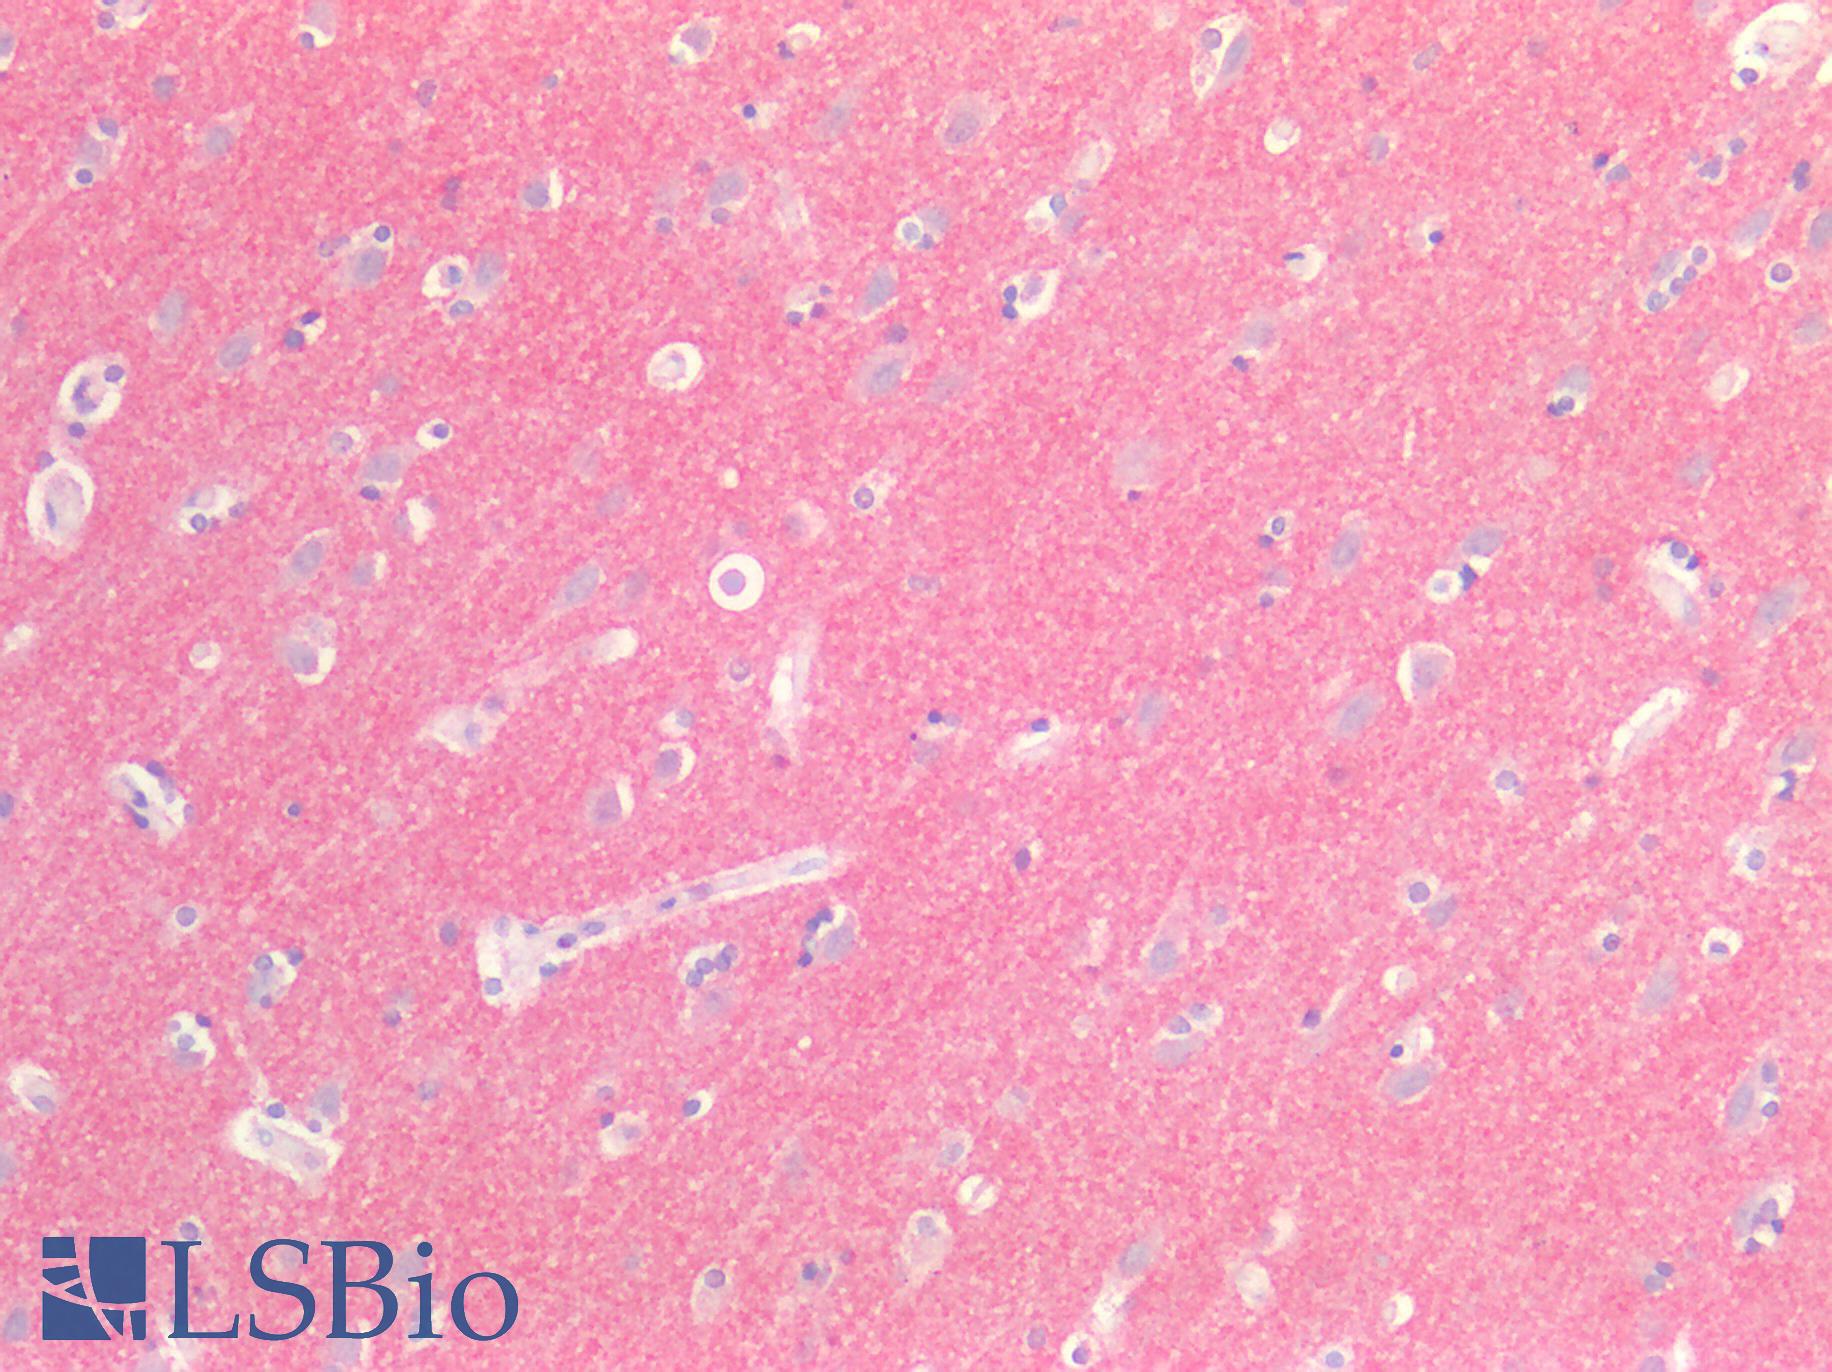 SIRPA / CD172a Antibody - Human Brain, Cortex: Formalin-Fixed, Paraffin-Embedded (FFPE)